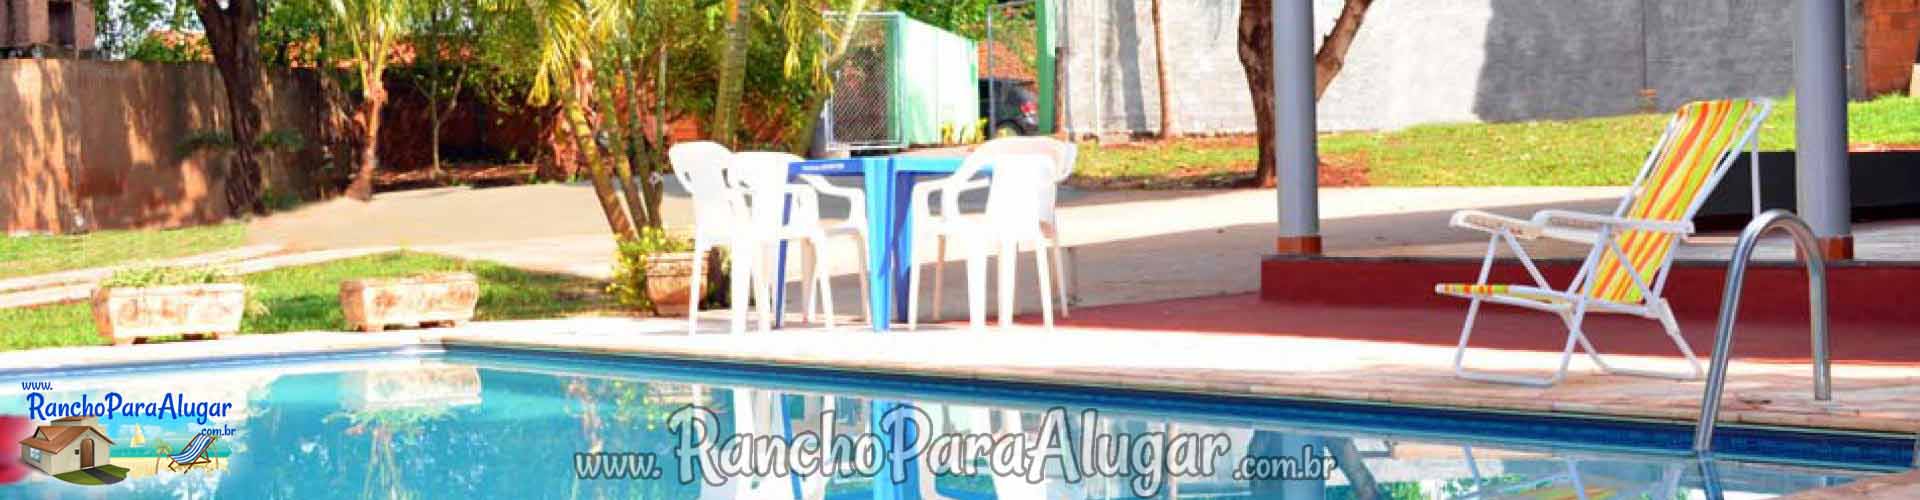 Rancho Sales para Alugar em Miguelopolis